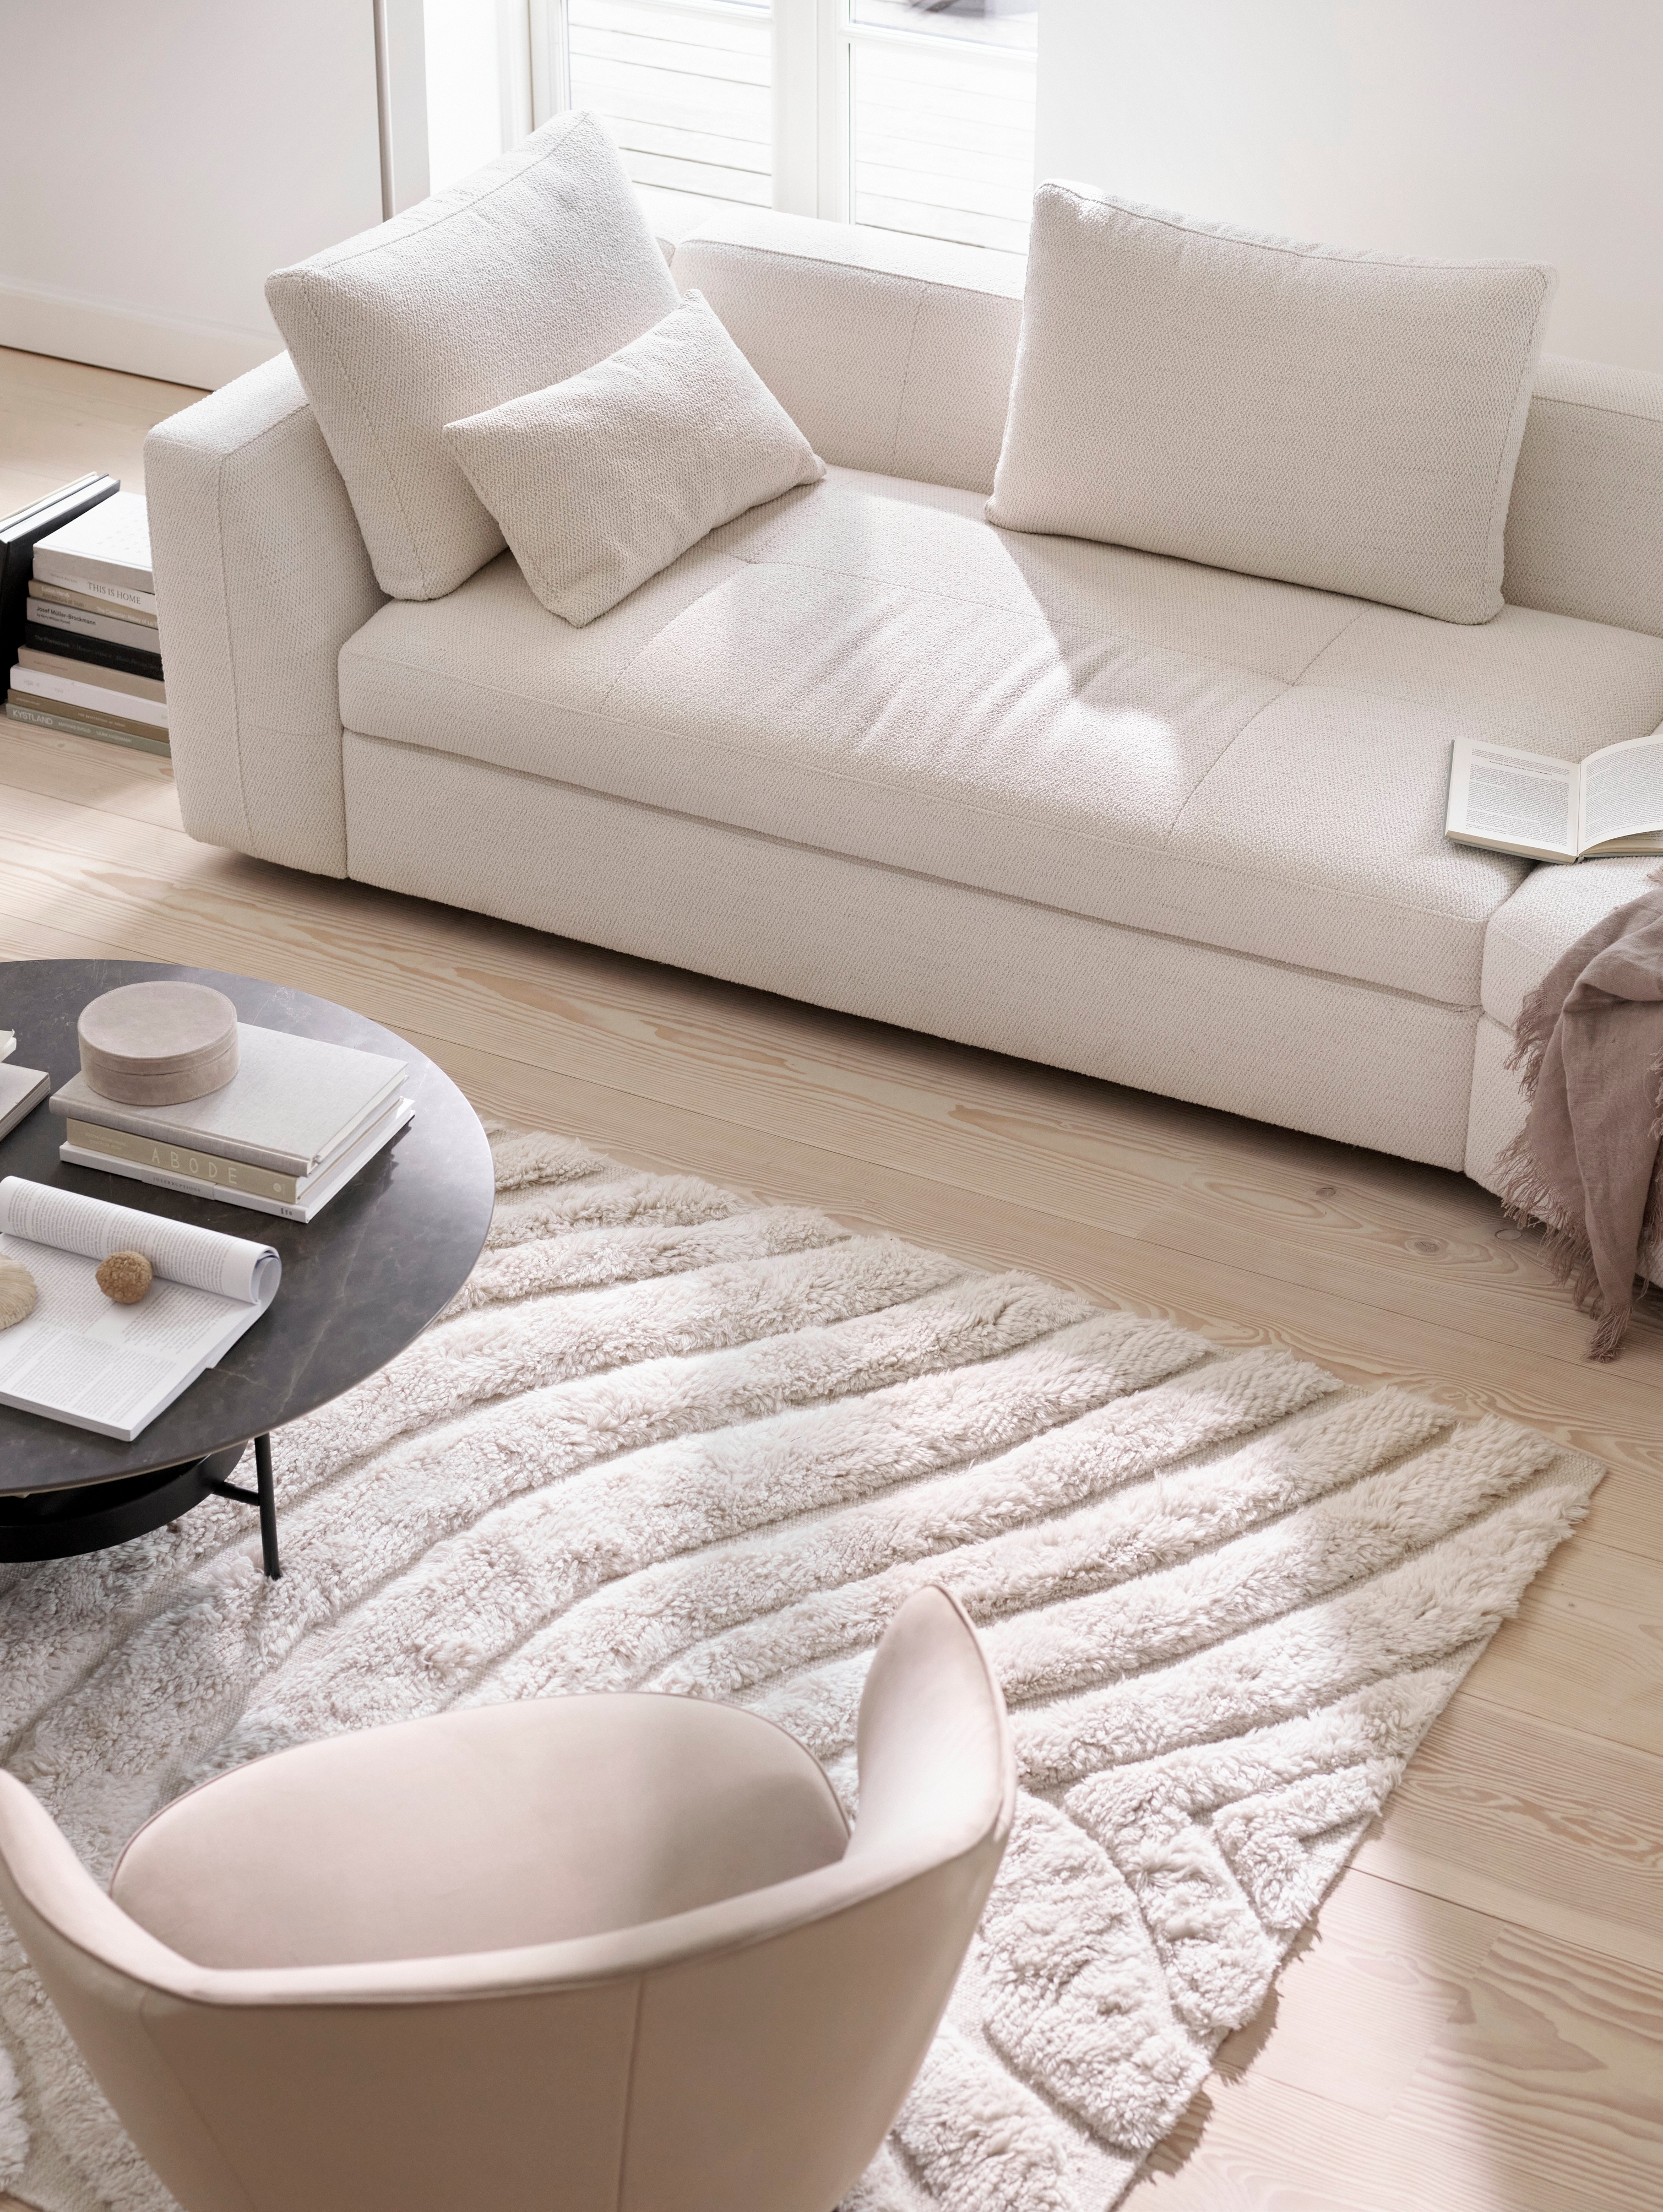 Диван Bergamo с круглым модулем для отдыха с обивкой из ткани Lazio белого цвета и журнальный столик Madrid с темным мраморно-керамическим покрытием.